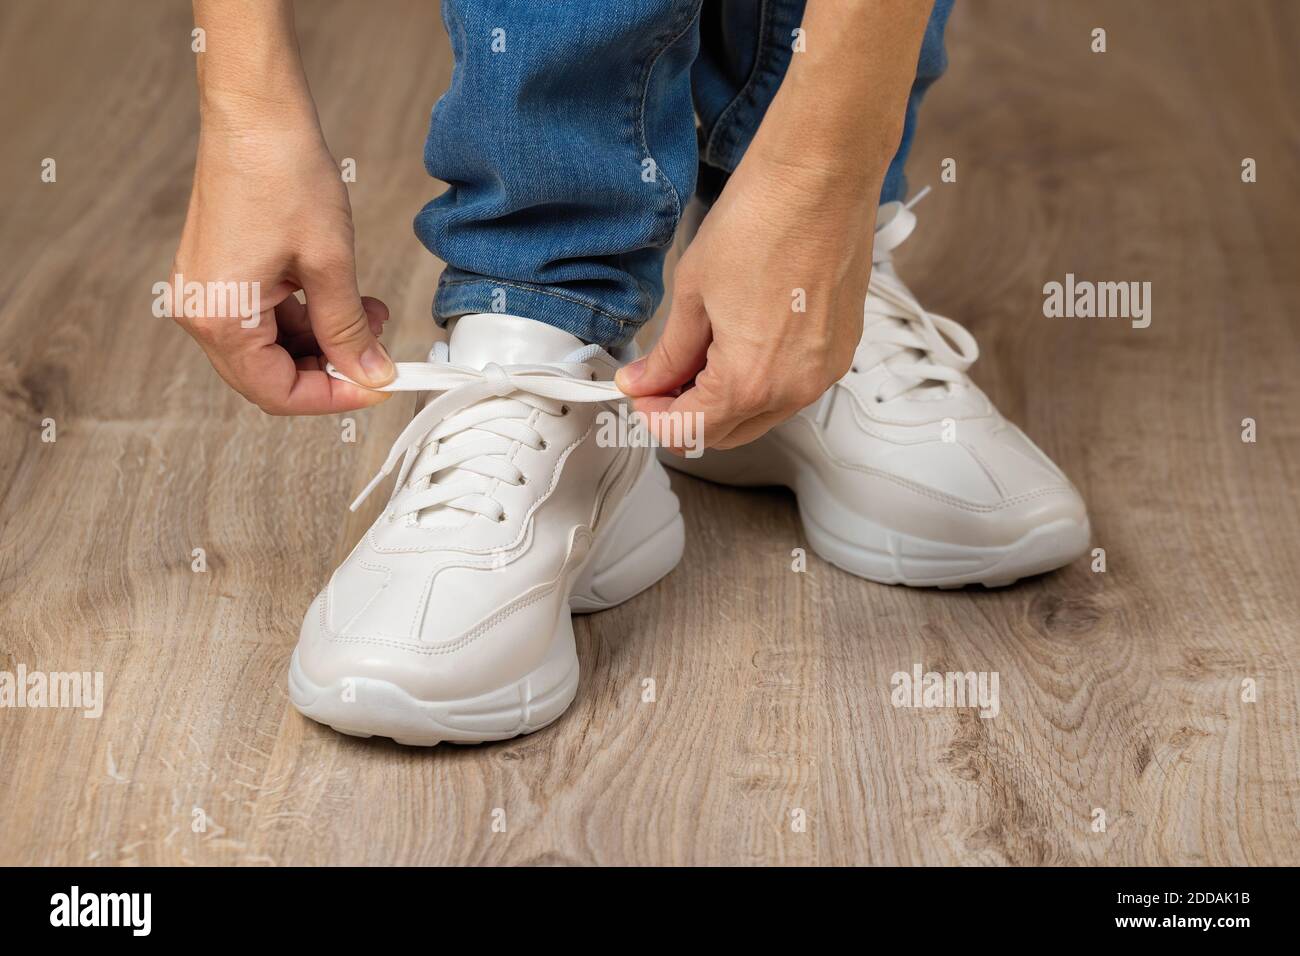 Les mains de femme caucasienne nouent des lacets élastiques sur la grosse  semelle des sneakers blanches sur ses pieds sur le sol brun. Nouvelles  chaussures confortables pour un style de vie actif